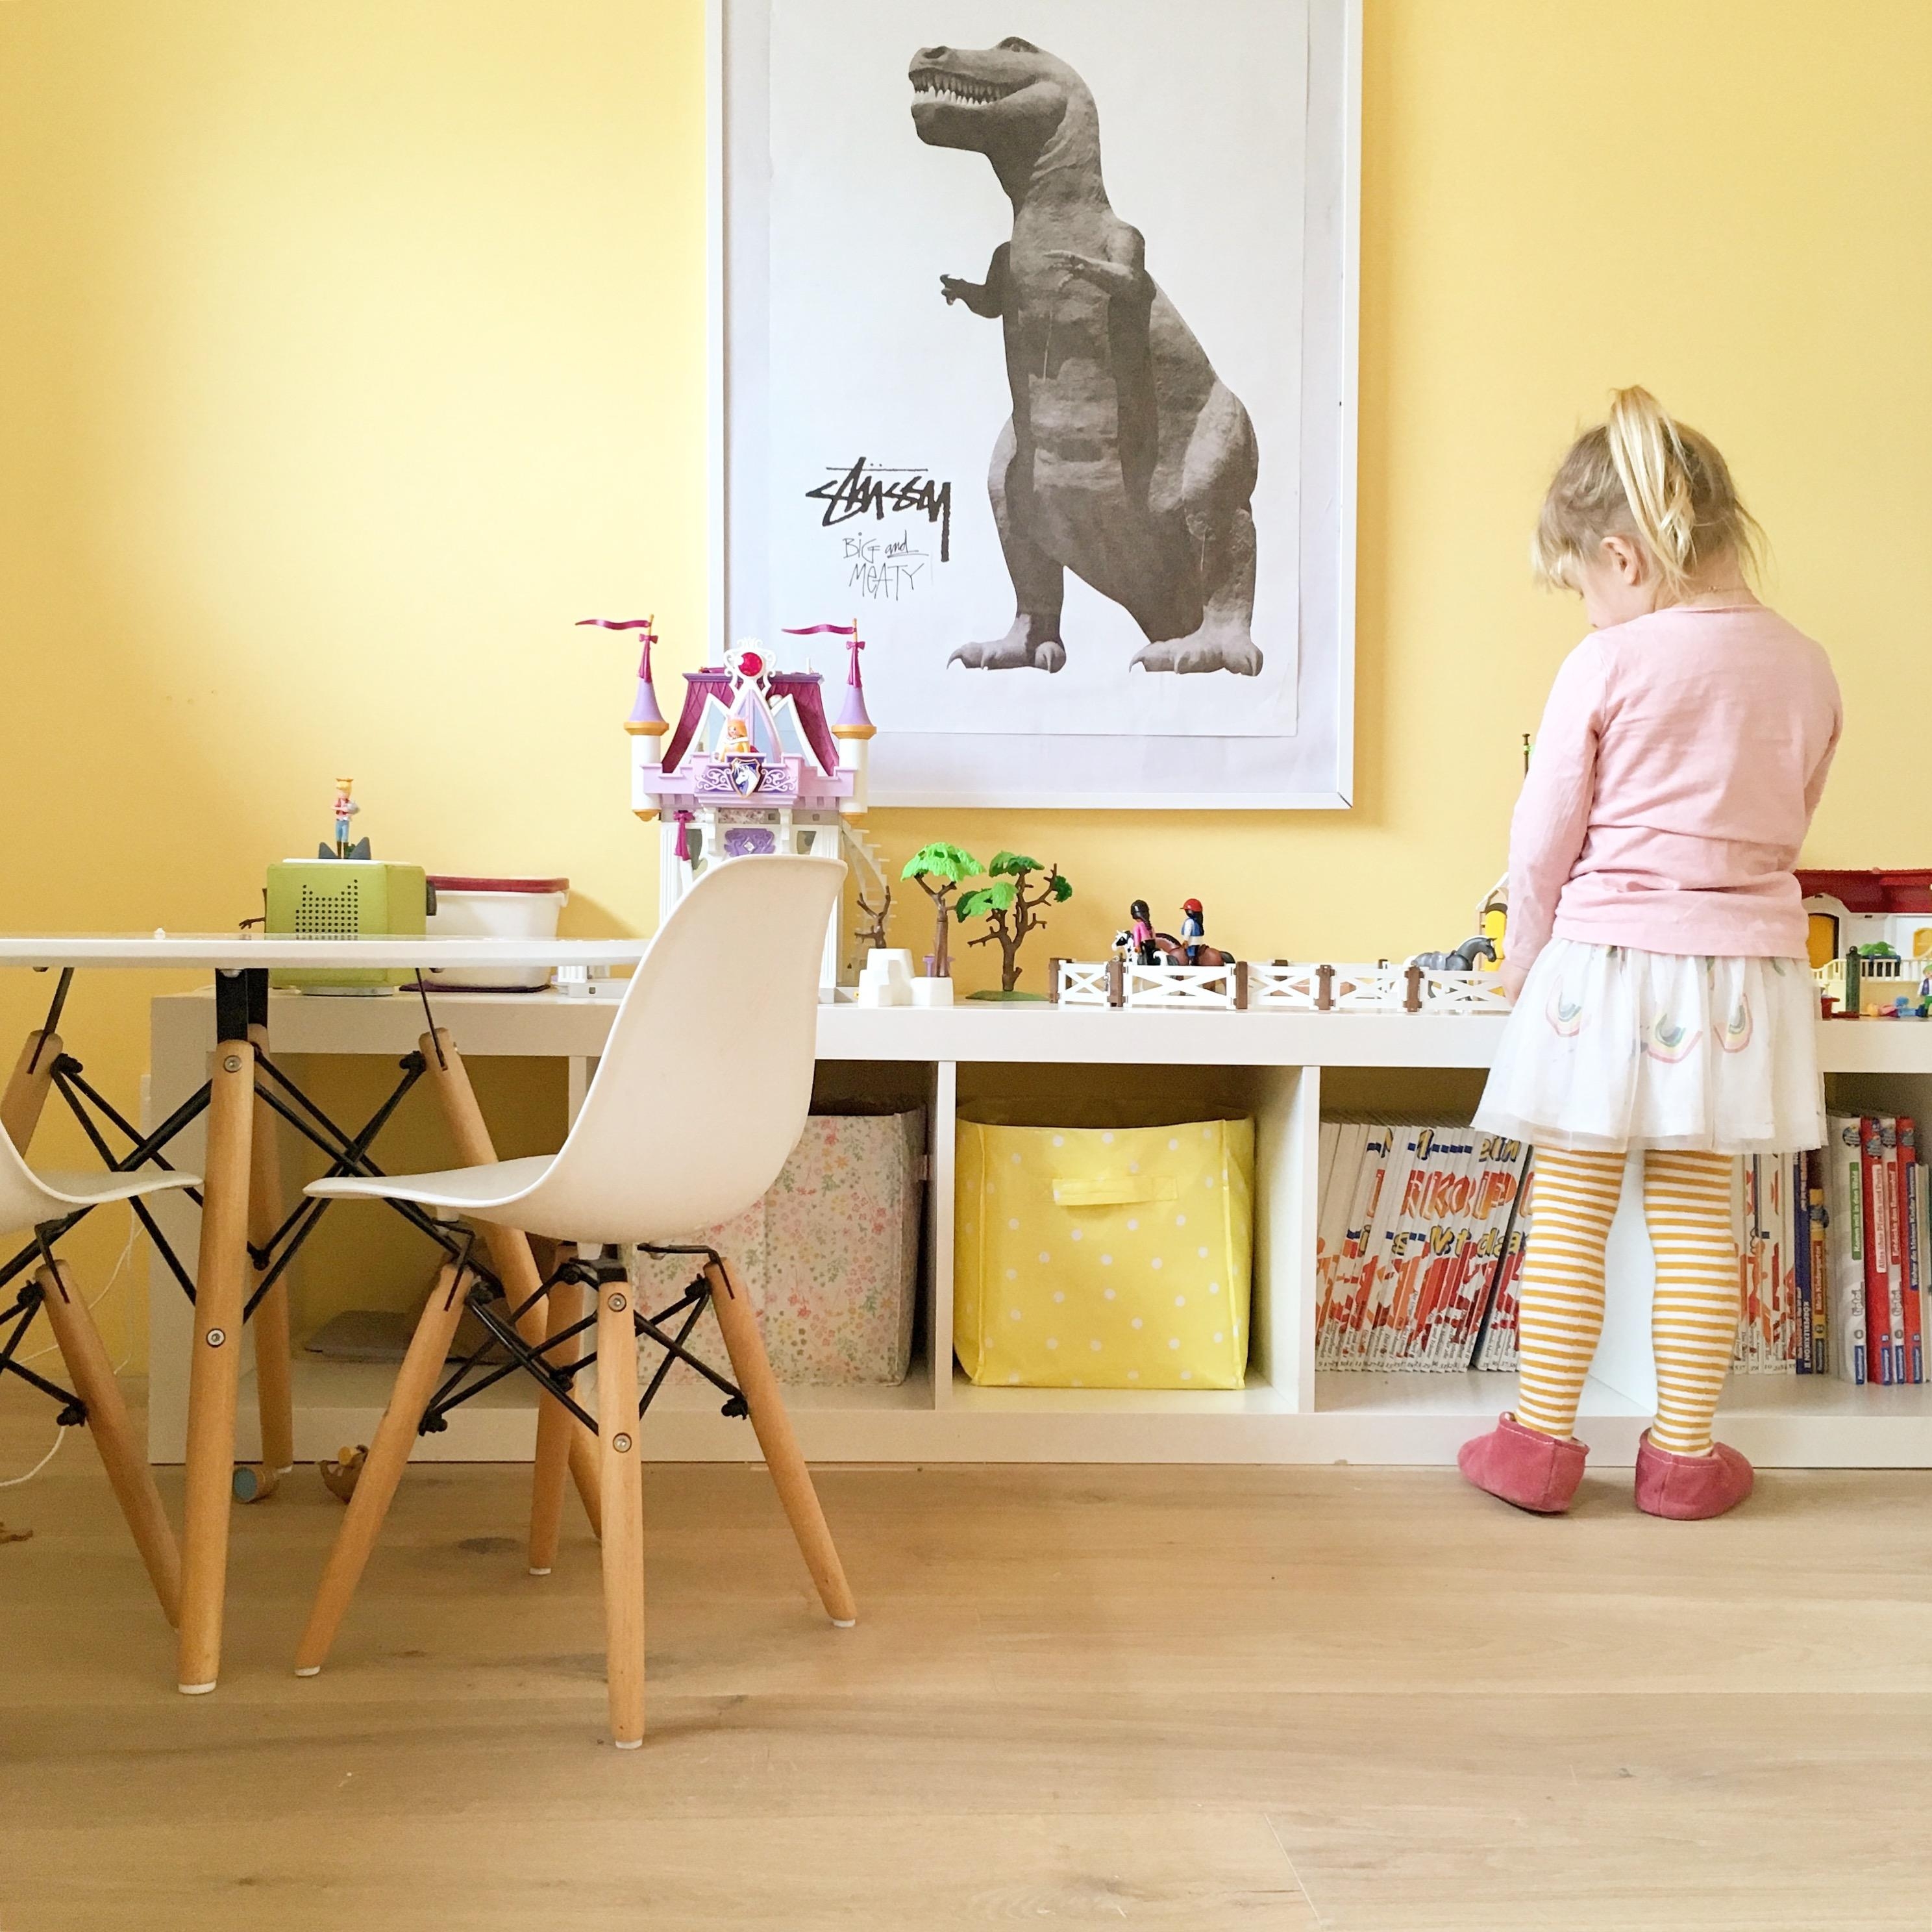 A big girls home ❤️ Kinderzimmer sind einrichtungstechnisch eine echte Herausforderung ☝️🙌 #kinderzimmer